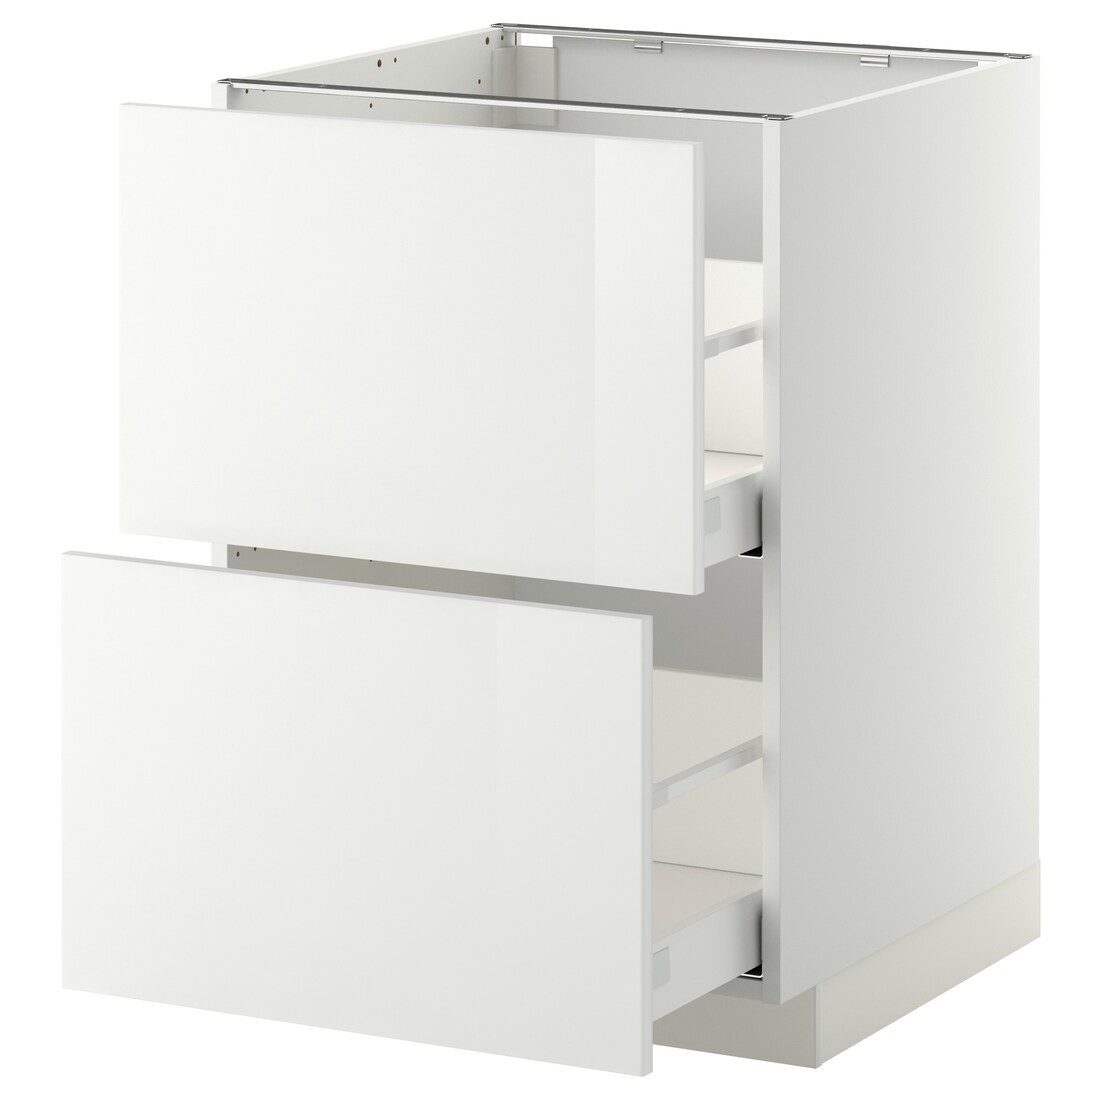 IKEA METOD МЕТОД / MAXIMERA МАКСИМЕРА Напольный шкаф с ящиками, белый / Ringhult белый, 60x60 см 59911709 | 599.117.09